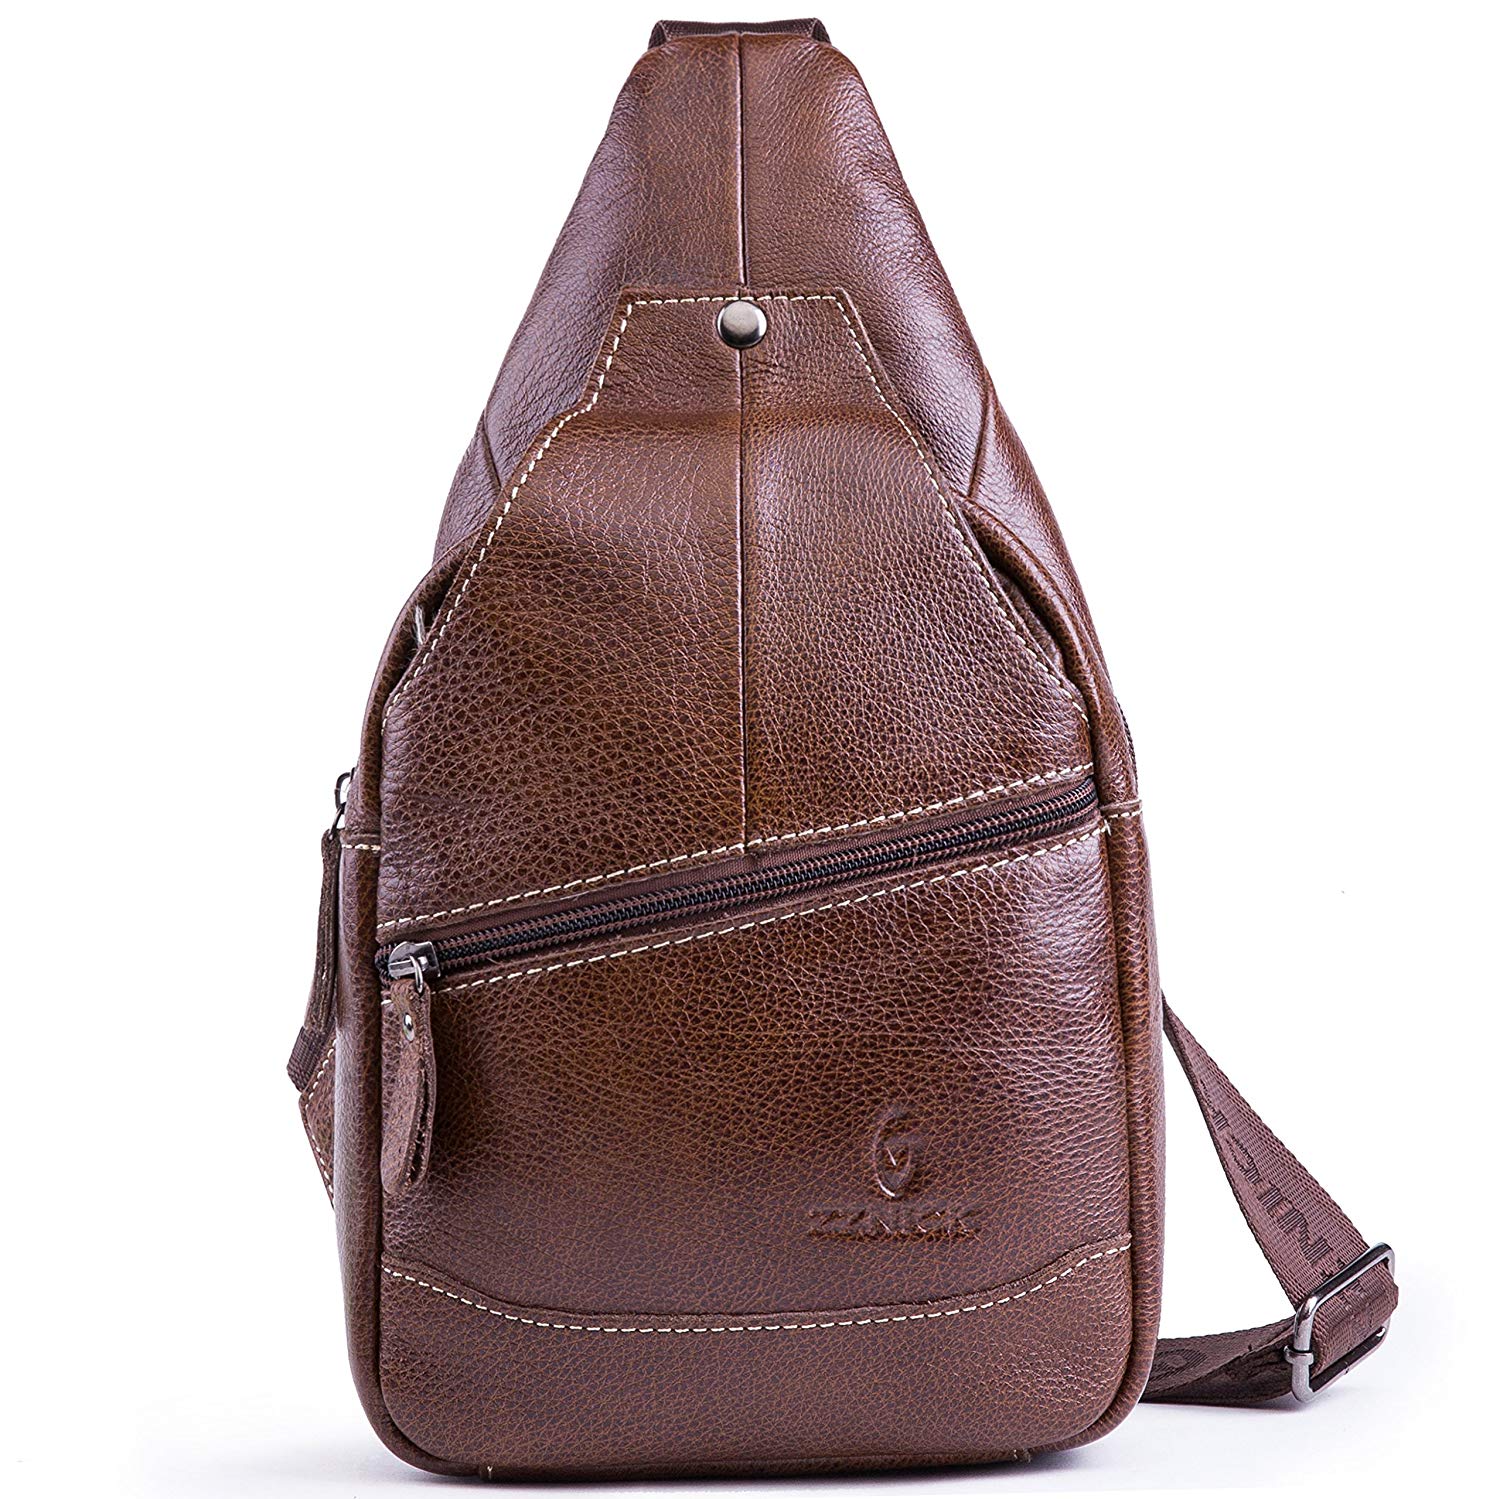 Chrysansmile-Genuine-Leather-Shoulder-Sling-Backpack-Bag